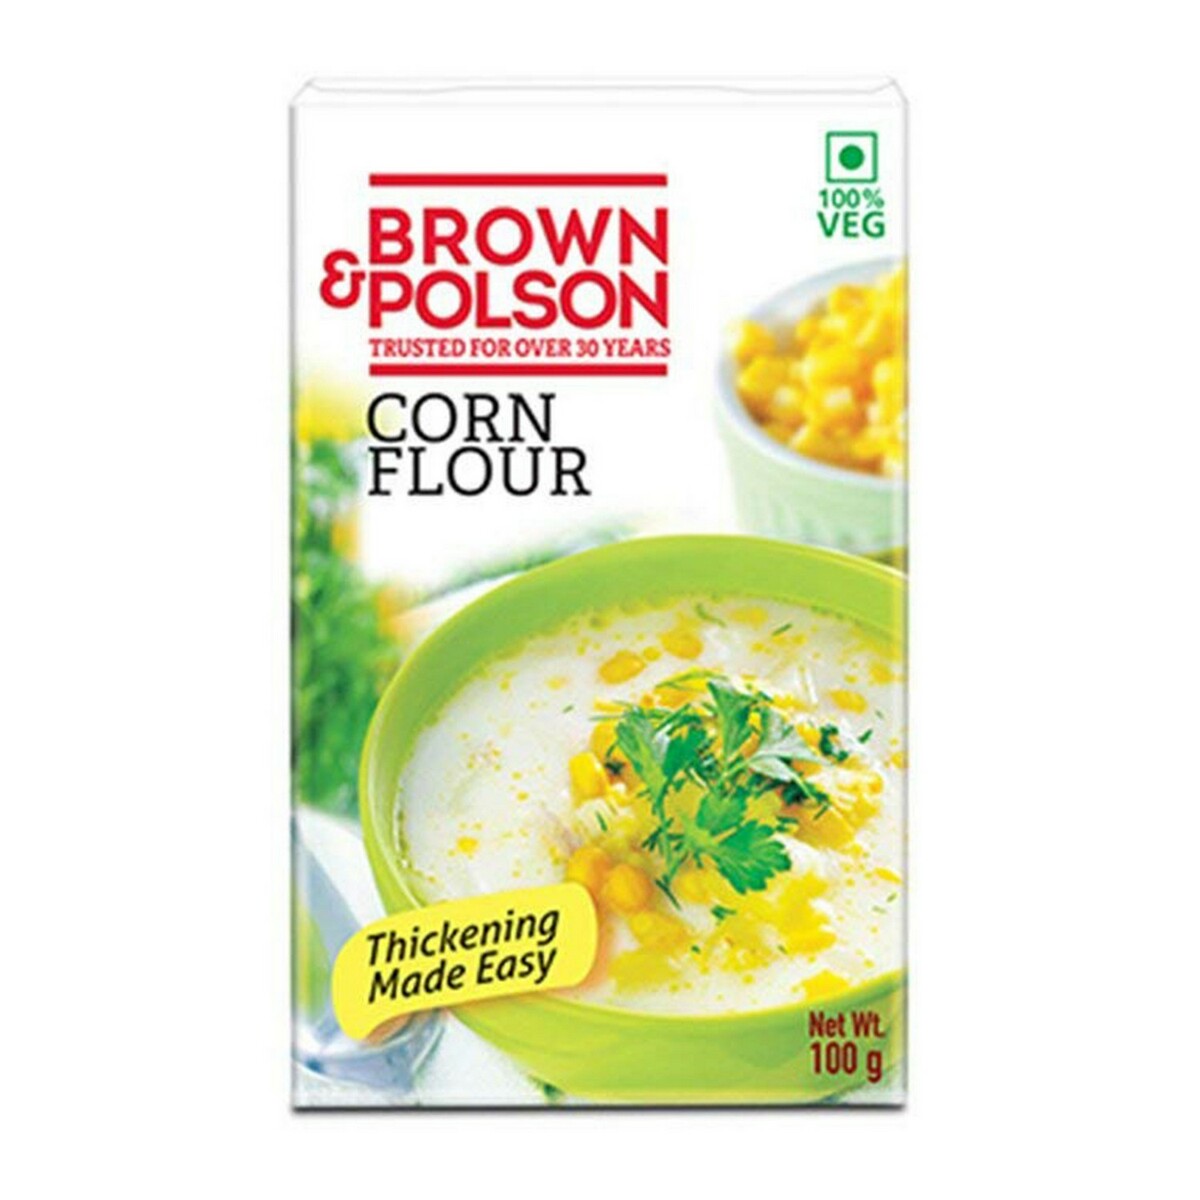 Brown & Polson Corn Flour 100g